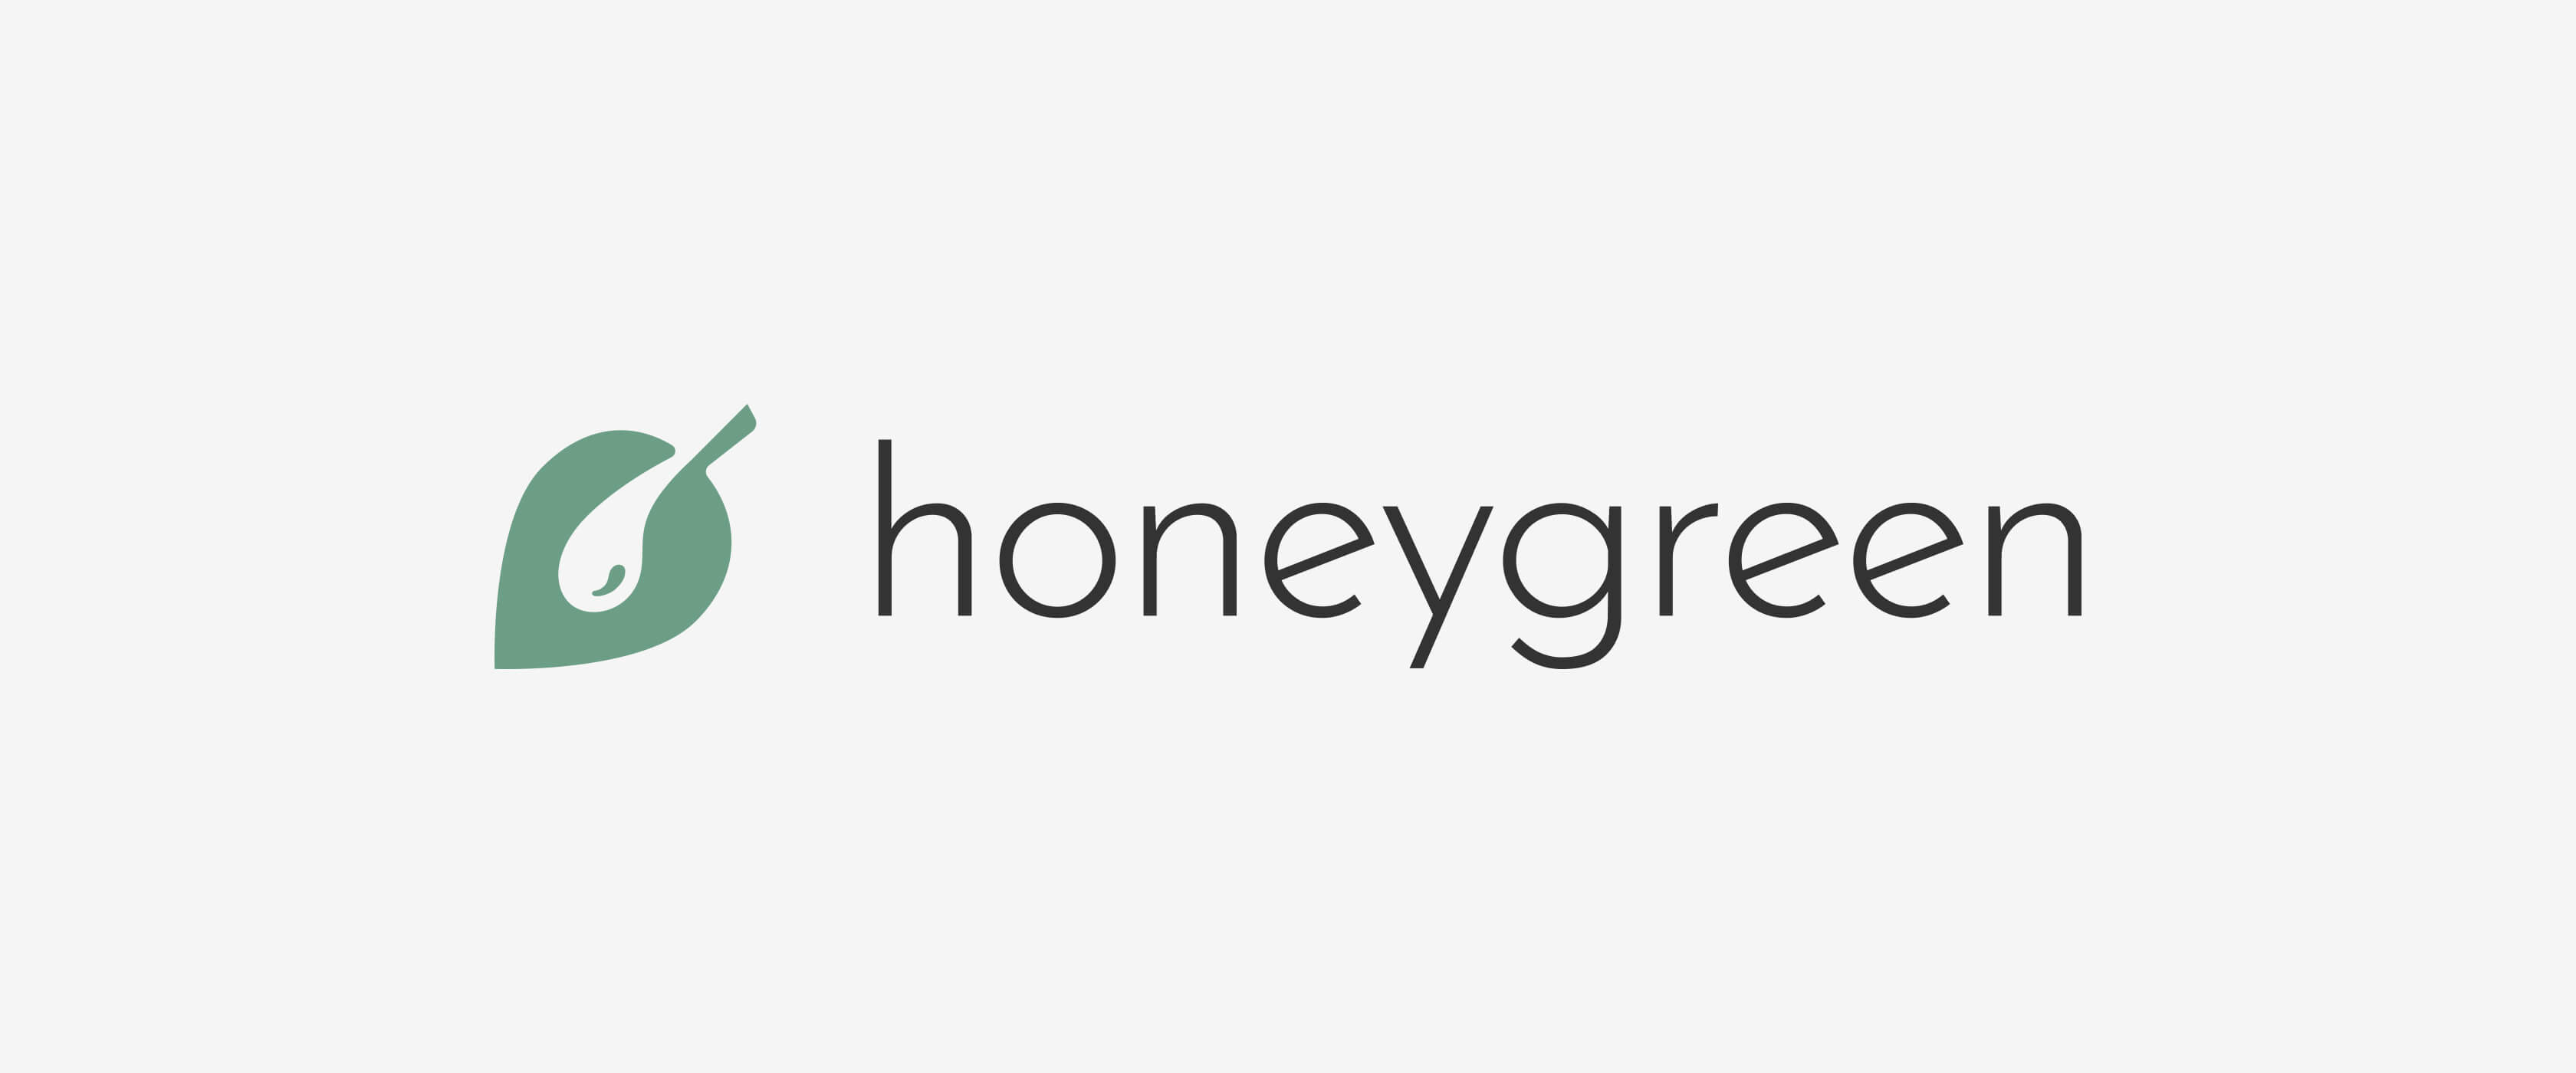 Honeygreen logo